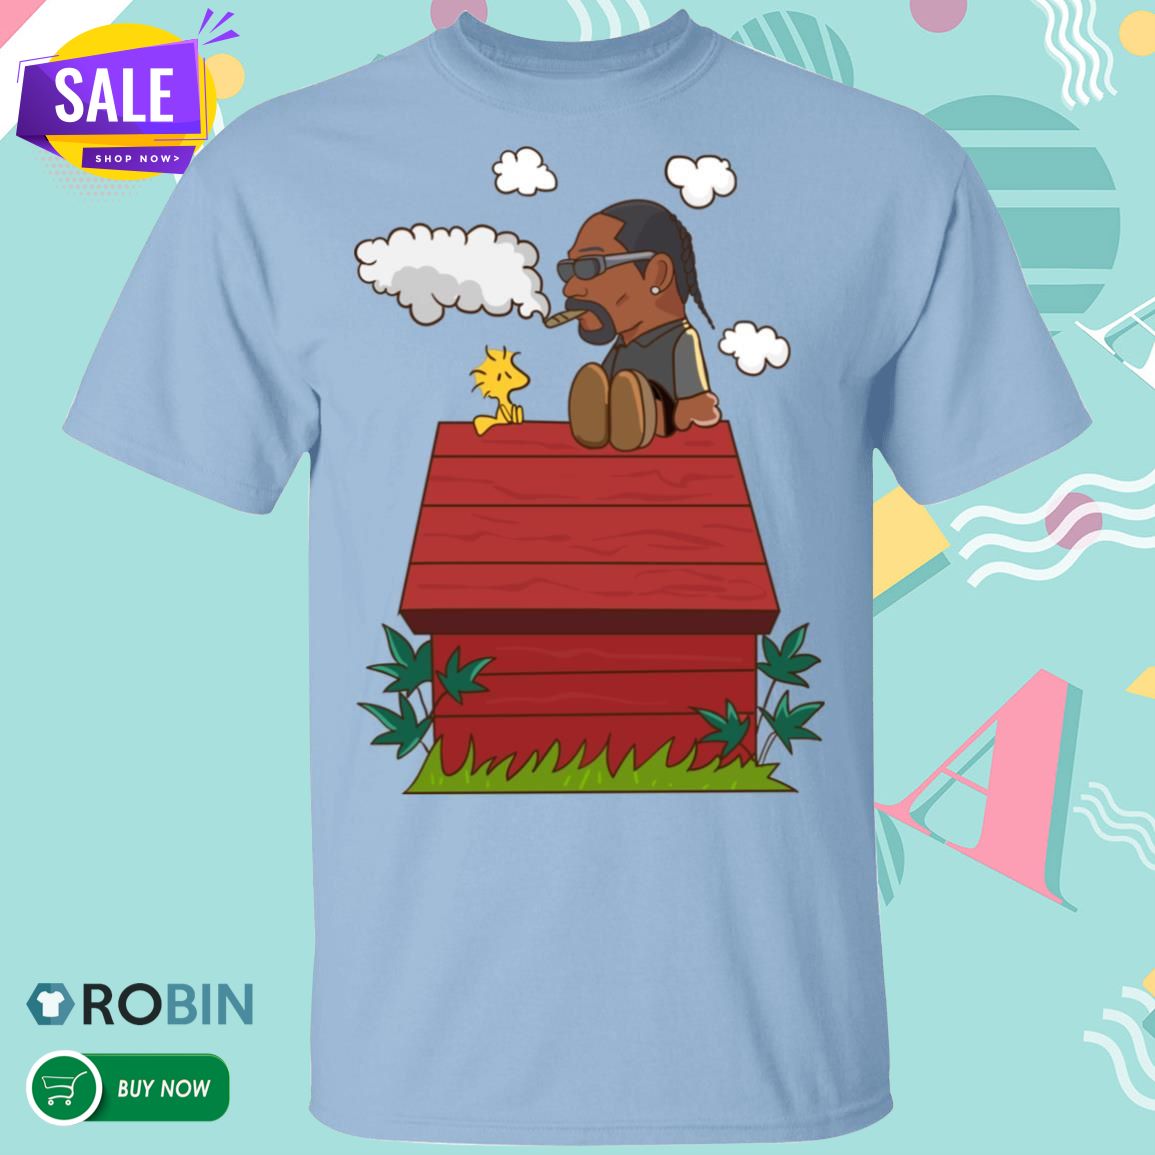 Snoop Dogg Smoking On Snoopy House T Shirt Robinplacefabrics